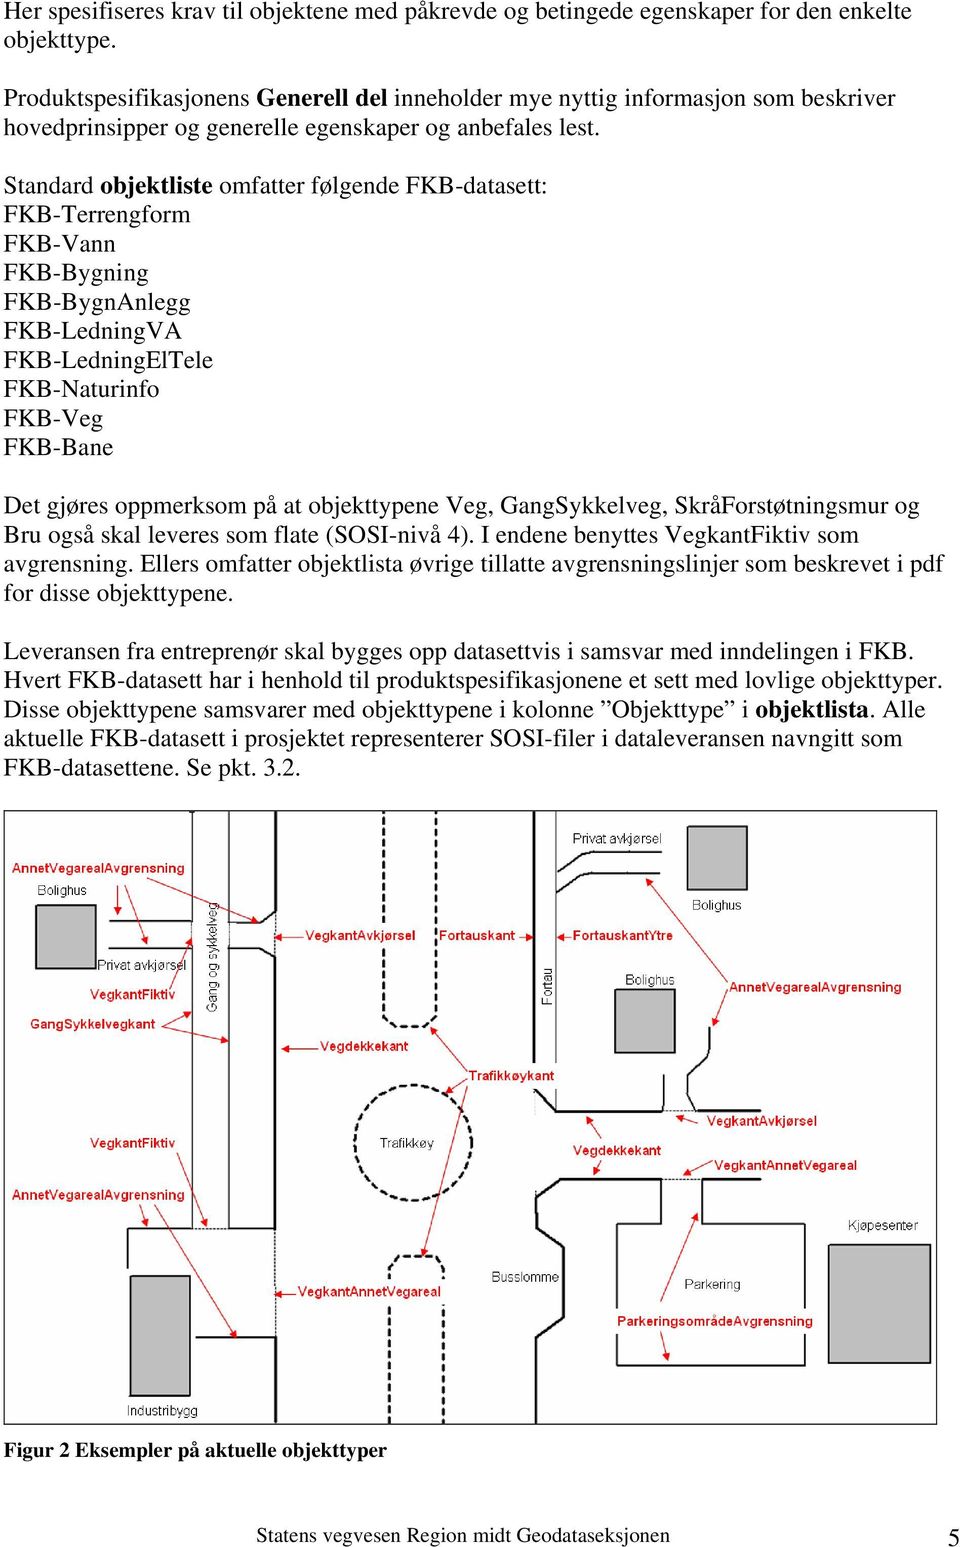 Standard objektliste omfatter følgende FKB-datasett: FKB-Terrengform FKB-Vann FKB-Bygning FKB-BygnAnlegg FKB-LedningVA FKB-LedningElTele FKB-Naturinfo FKB-Veg FKB-Bane Det gjøres oppmerksom på at